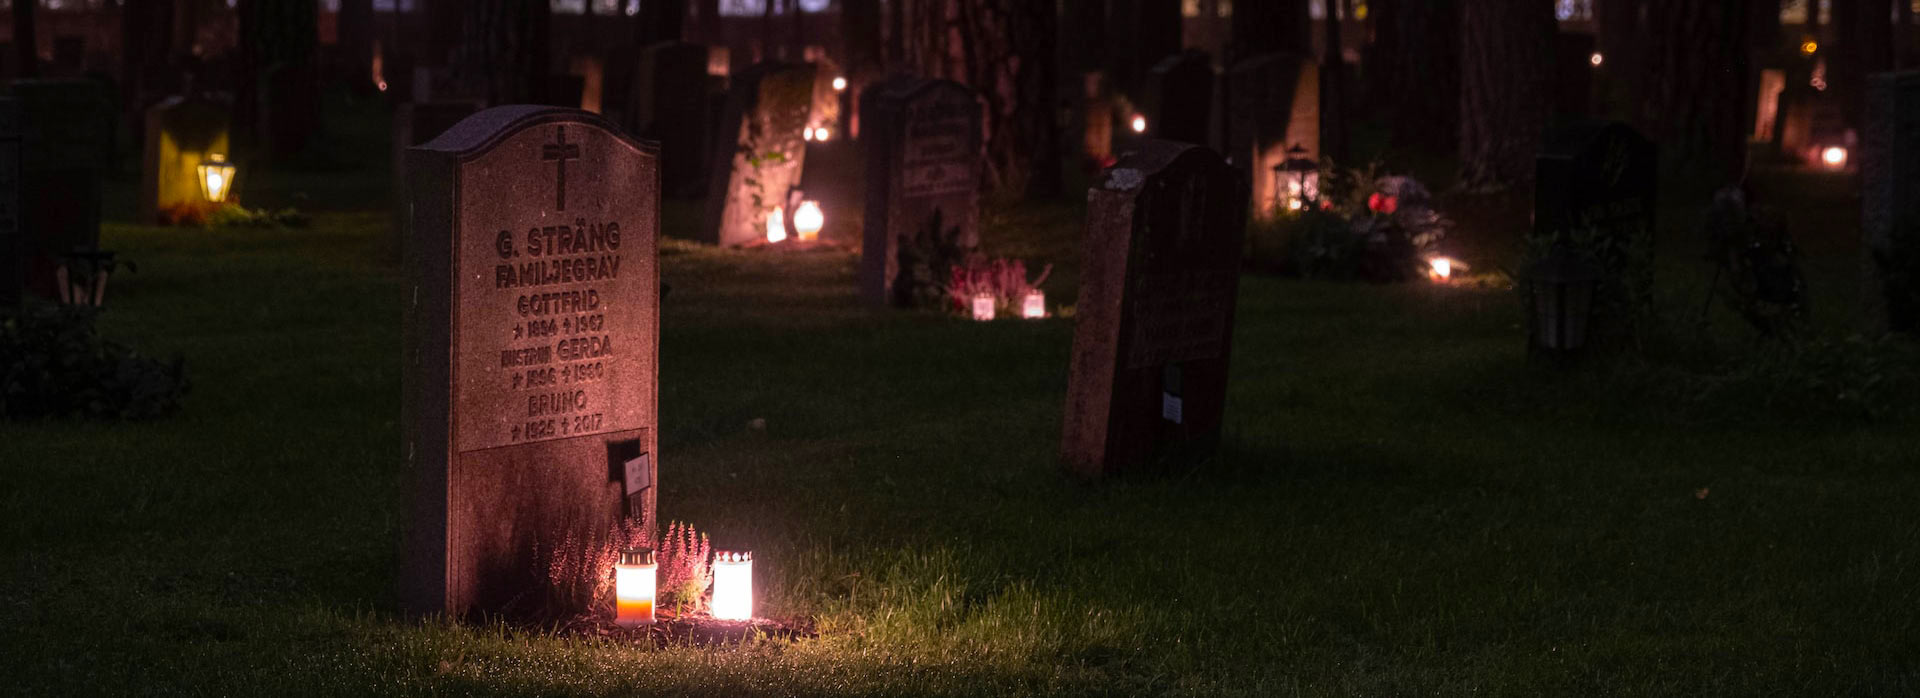 Un cimitero di notte illuminato con le candele